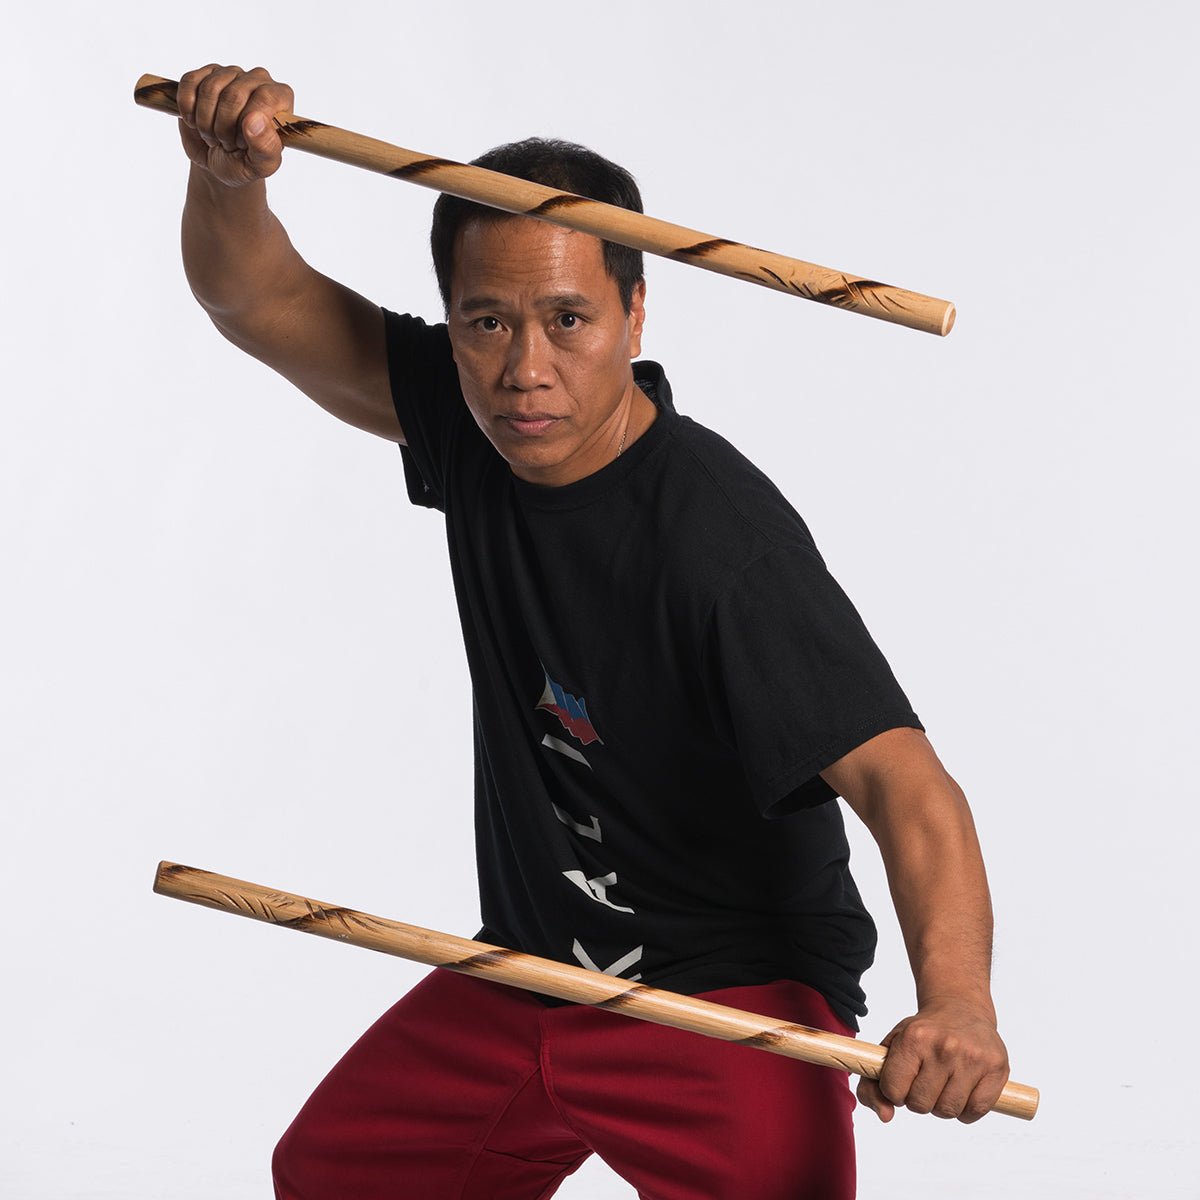 Escrima: The Filipino Weapon-Based Martial Art